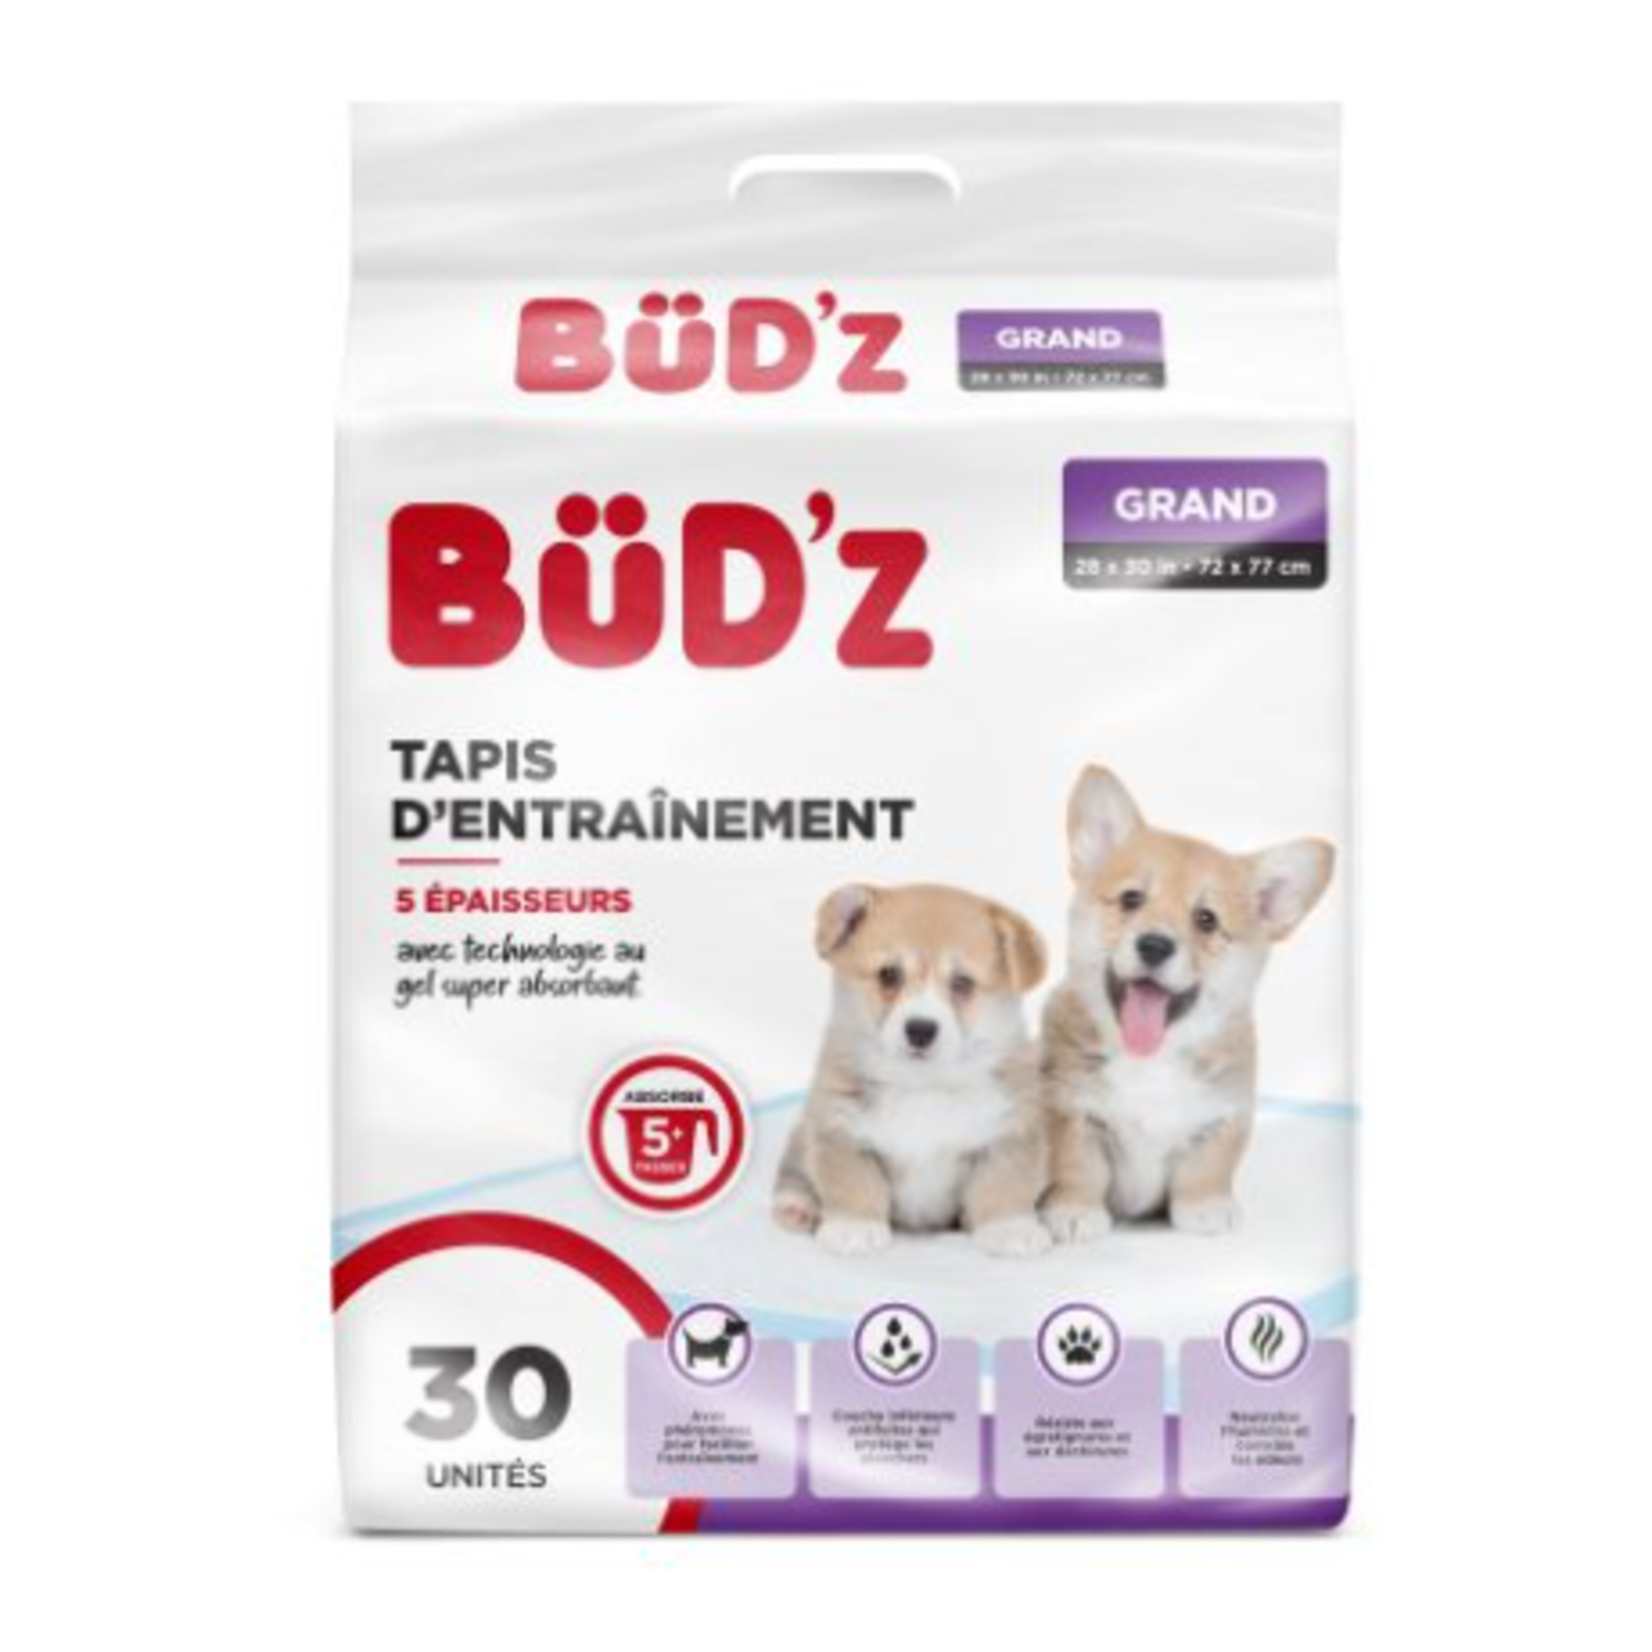 bud'z Dog Training Pads